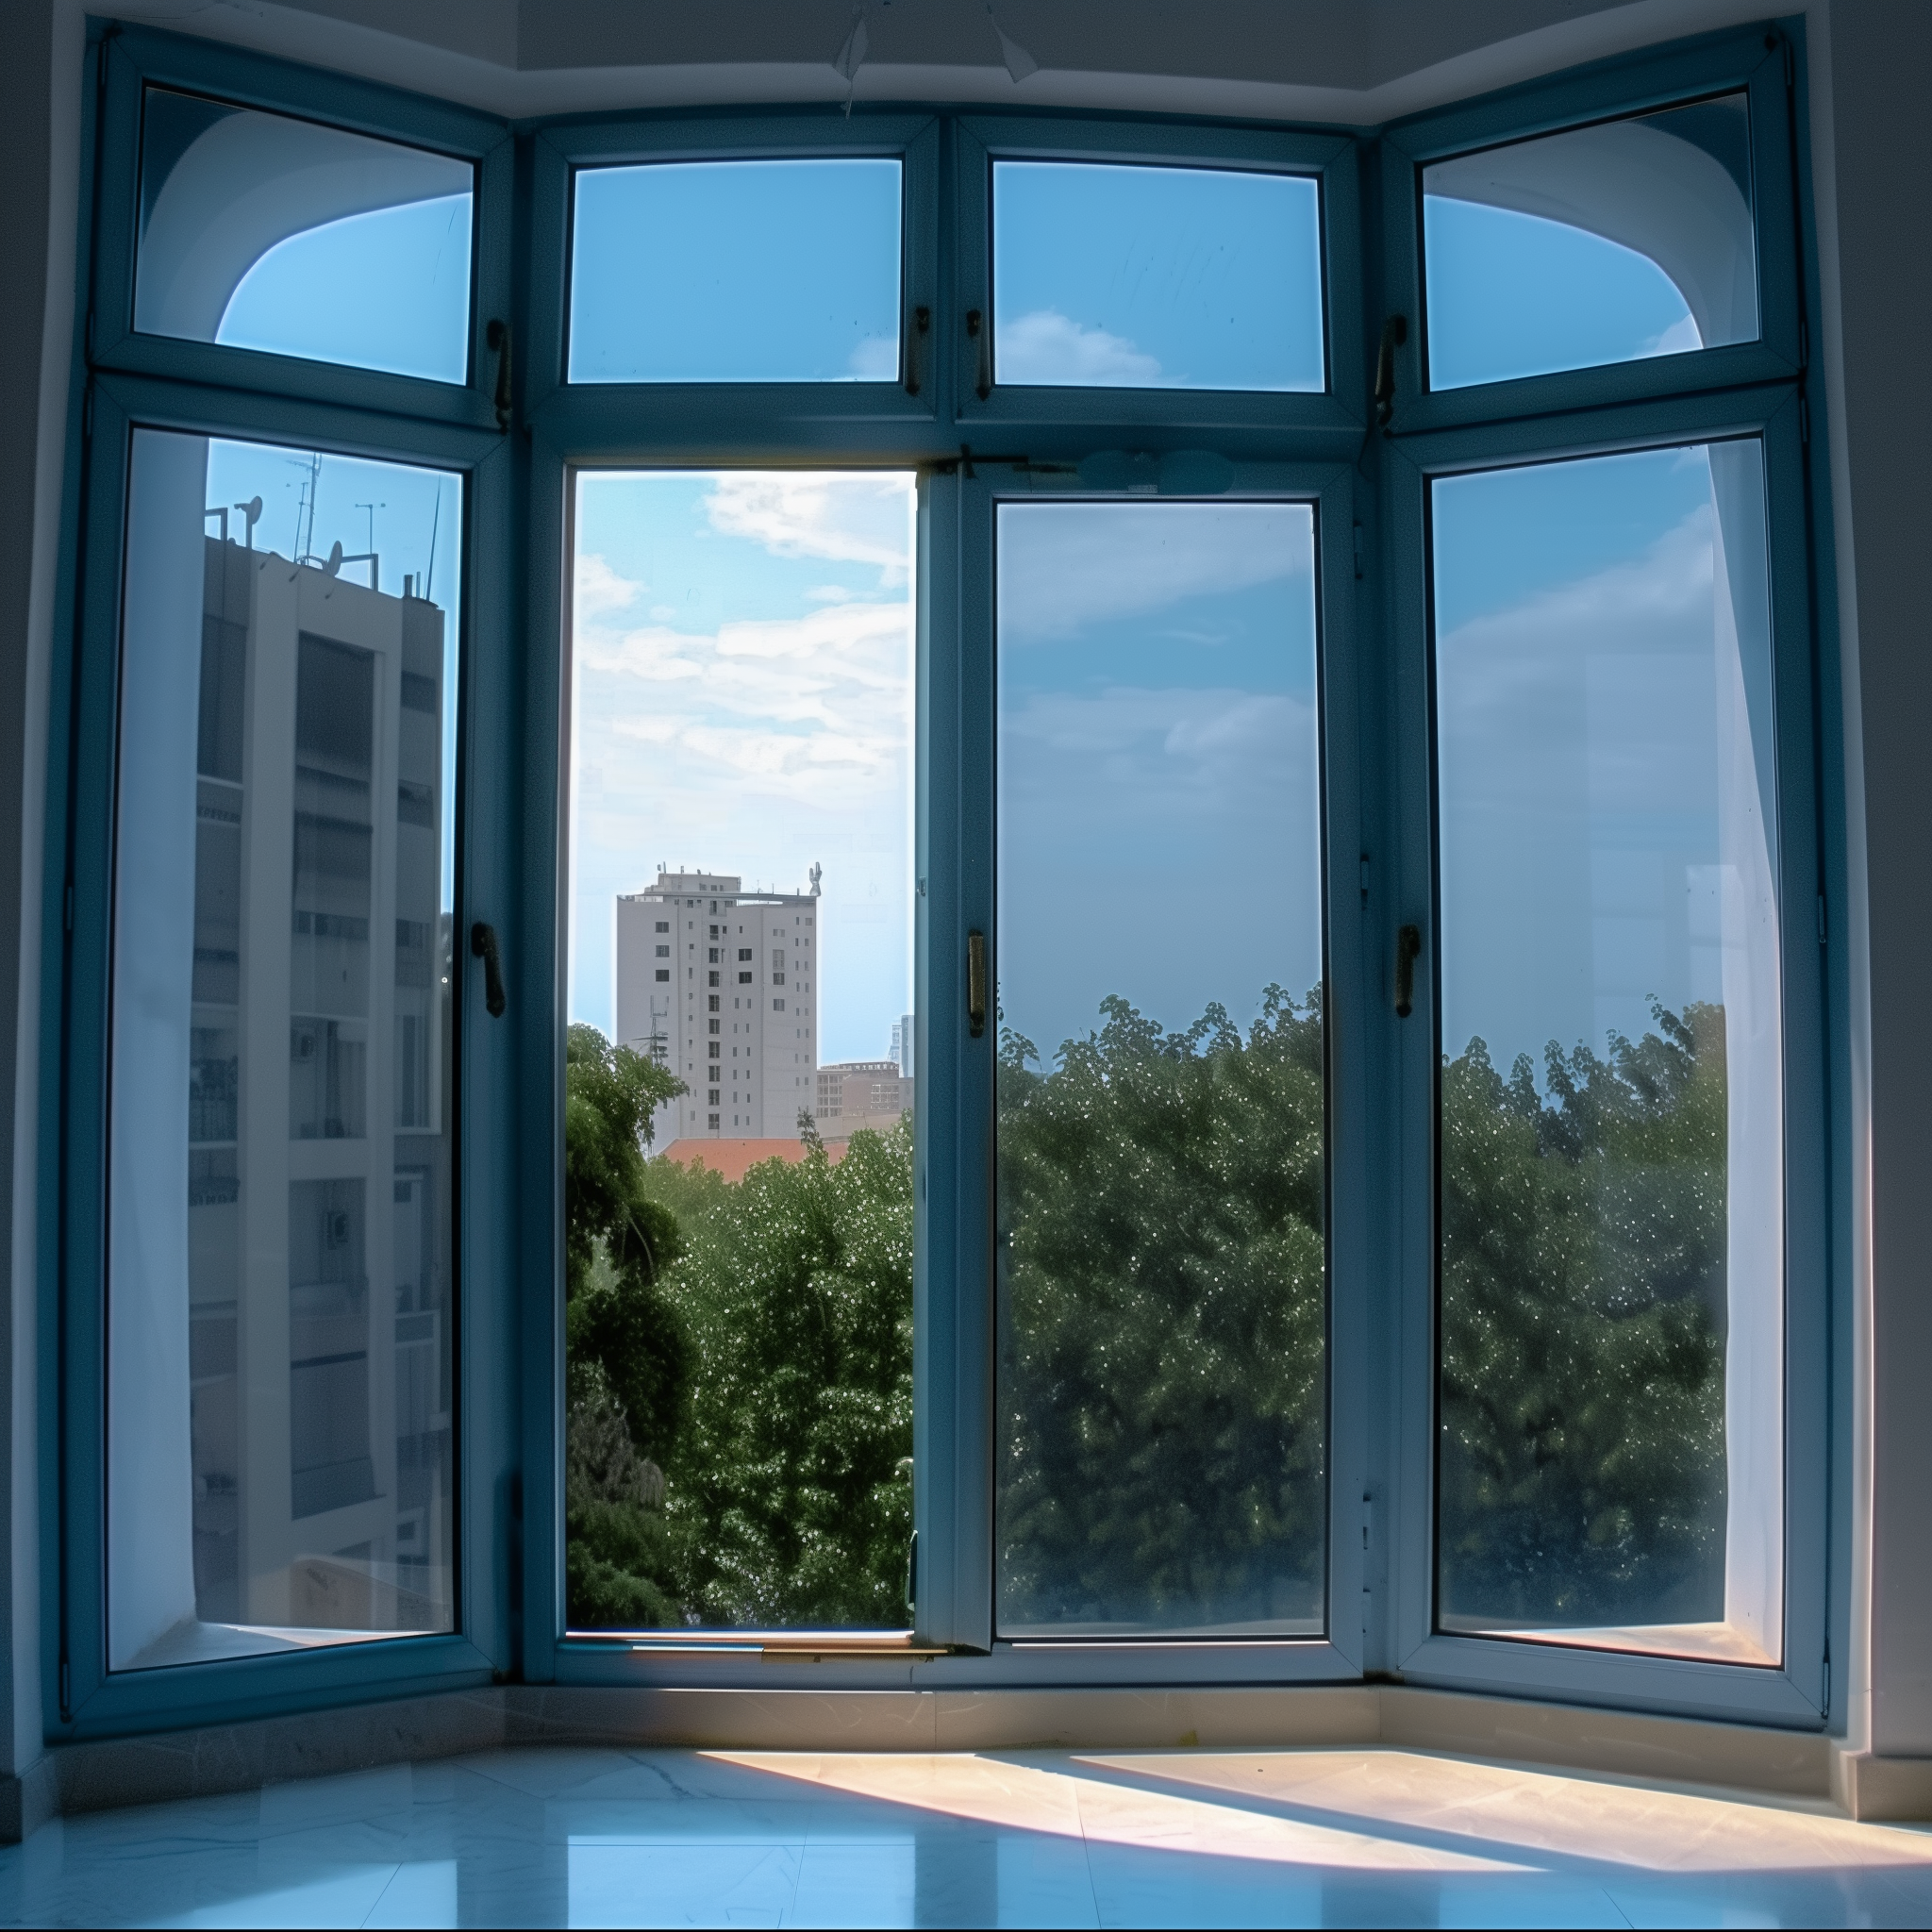 Клеим архитектурную пленку: Уникальный дизайн окон и защита от солнца в одном рулоне!